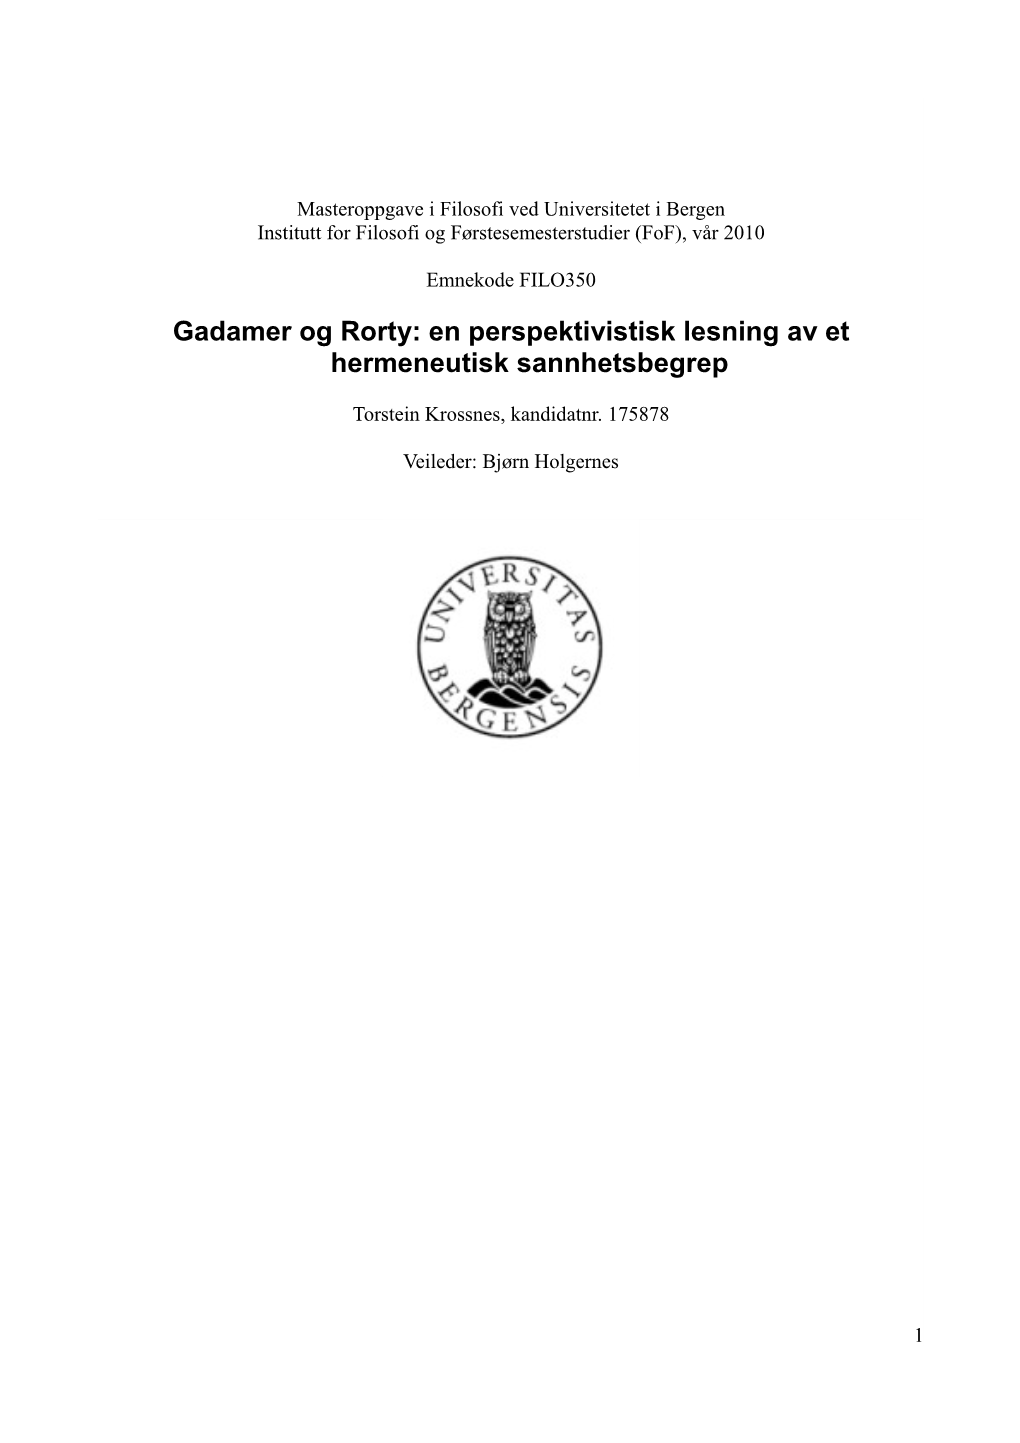 Gadamer Og Rorty: En Perspektivistisk Lesning Av Et Hermeneutisk Sannhetsbegrep